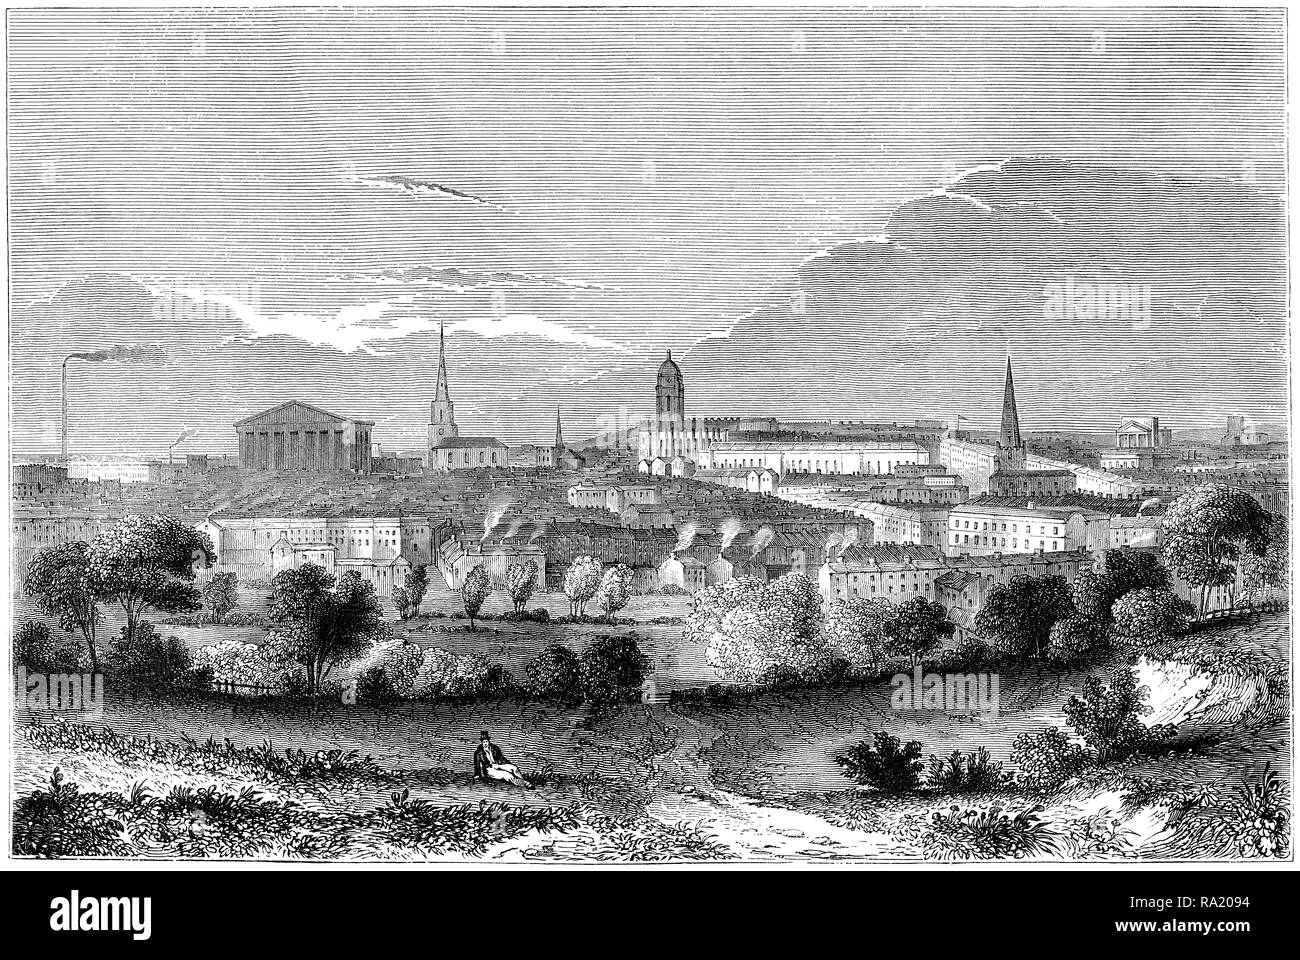 1845 gravure d'une vue de Birmingham. Banque D'Images